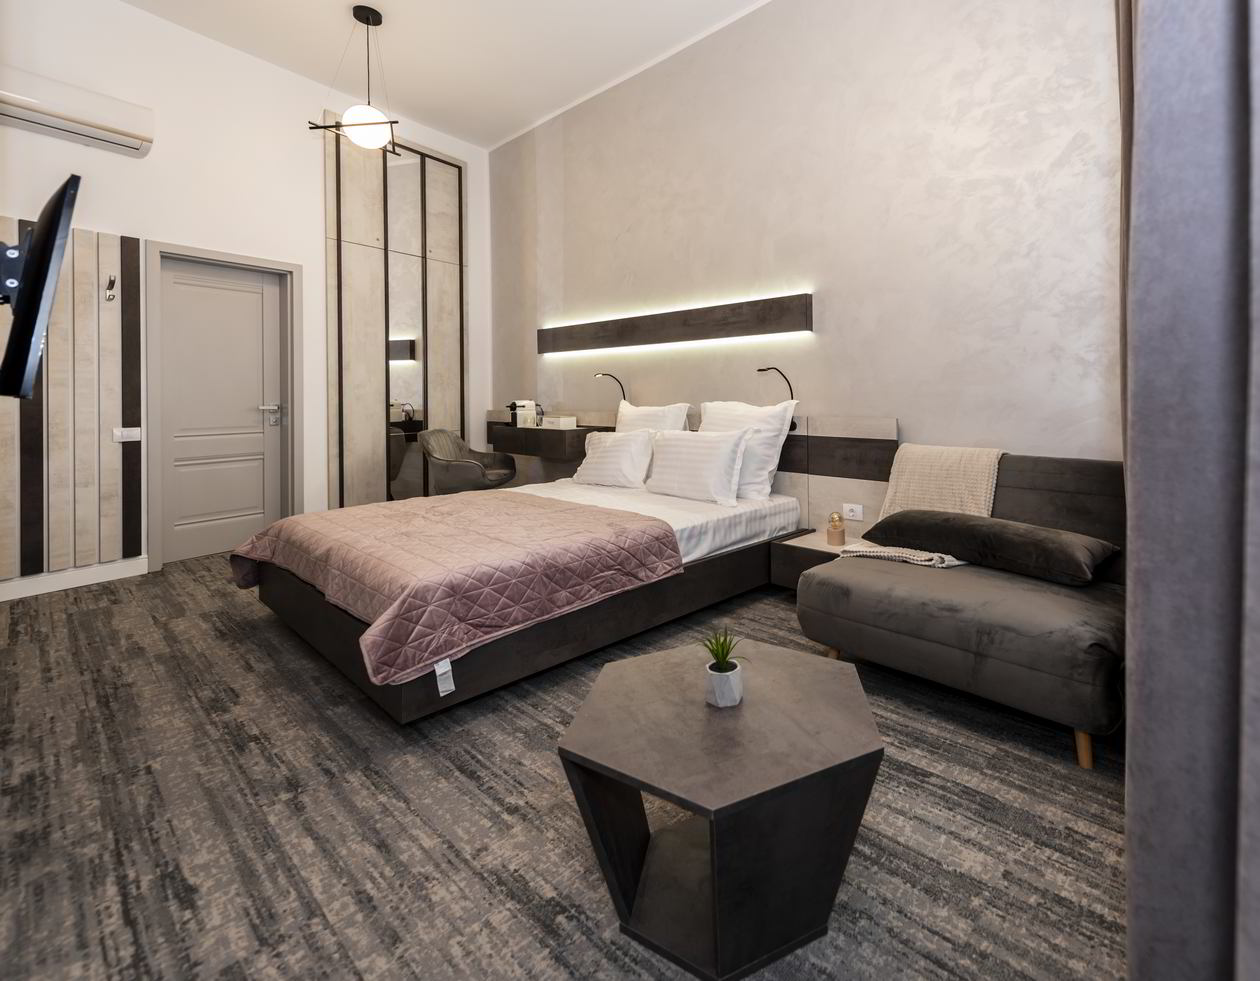 Proiect mobila Dormitor nr. 2 etaj 1, Horia Tecau, 19m², realizat 11 Iunie 2021 COD.13196